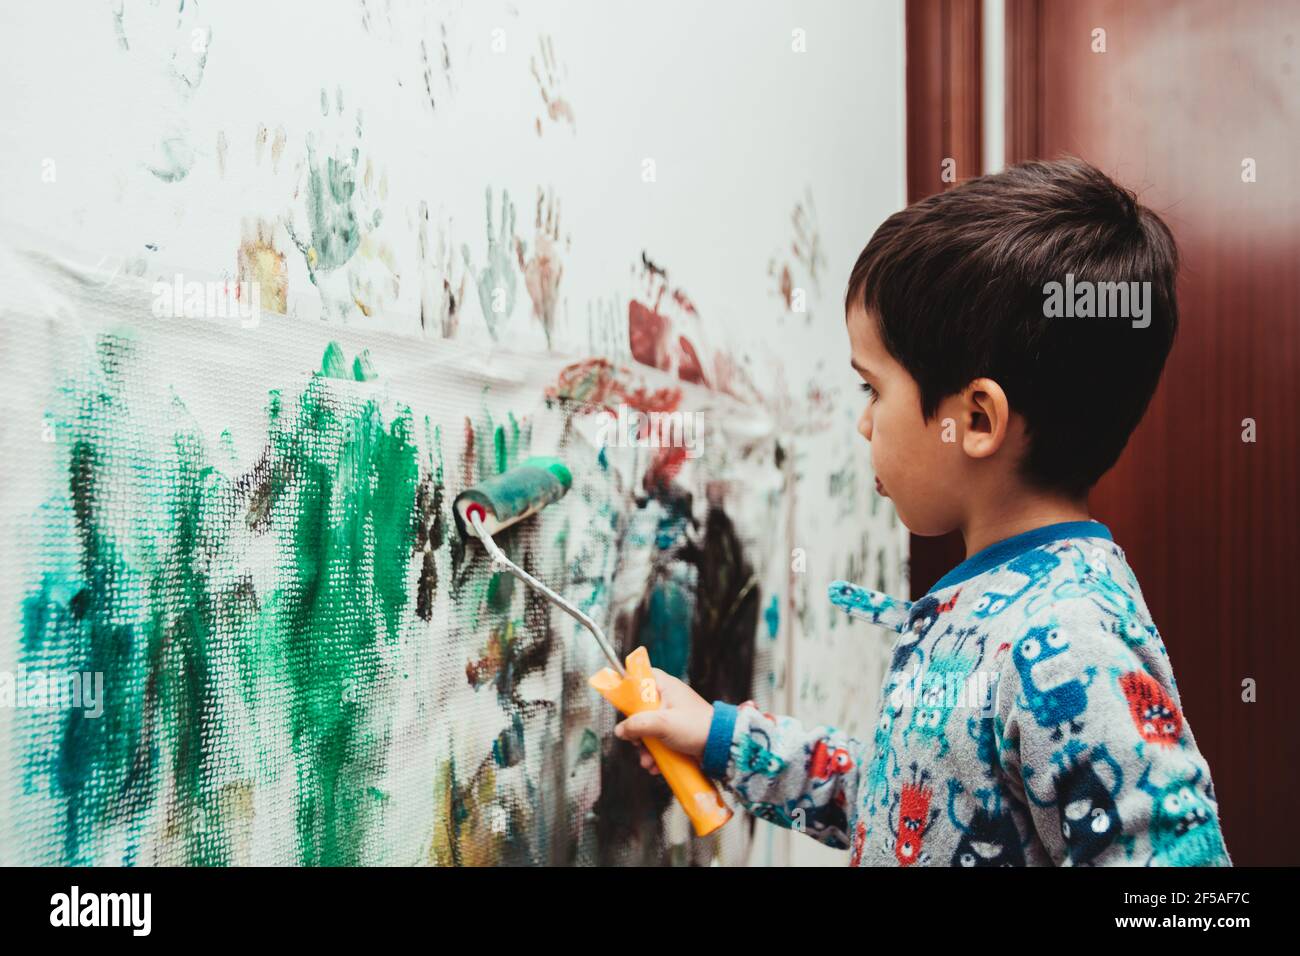 Kind spielt, um Farben an der Wand seines Hauses zu malen Mit Walze und Acrylfarbe Stockfoto